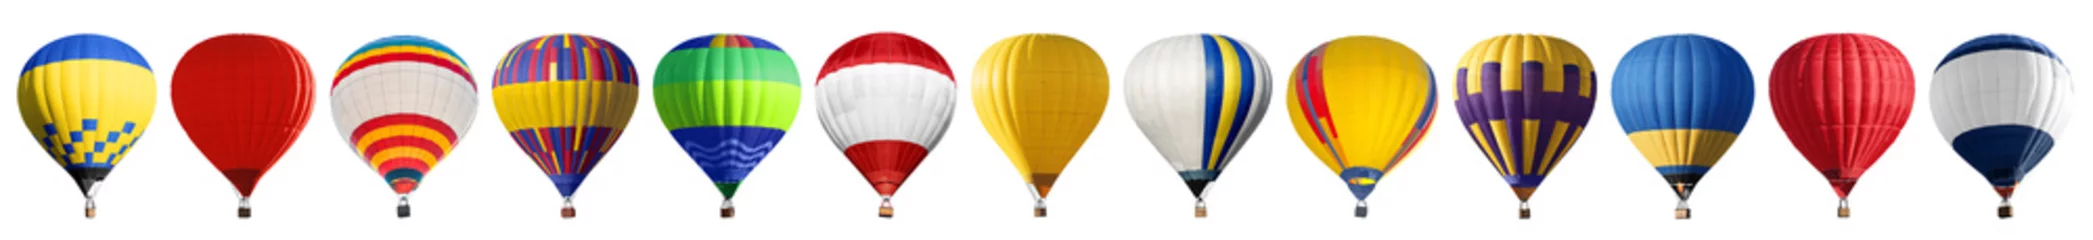  Set van heldere kleurrijke hete lucht ballonnen op witte achtergrond © New Africa